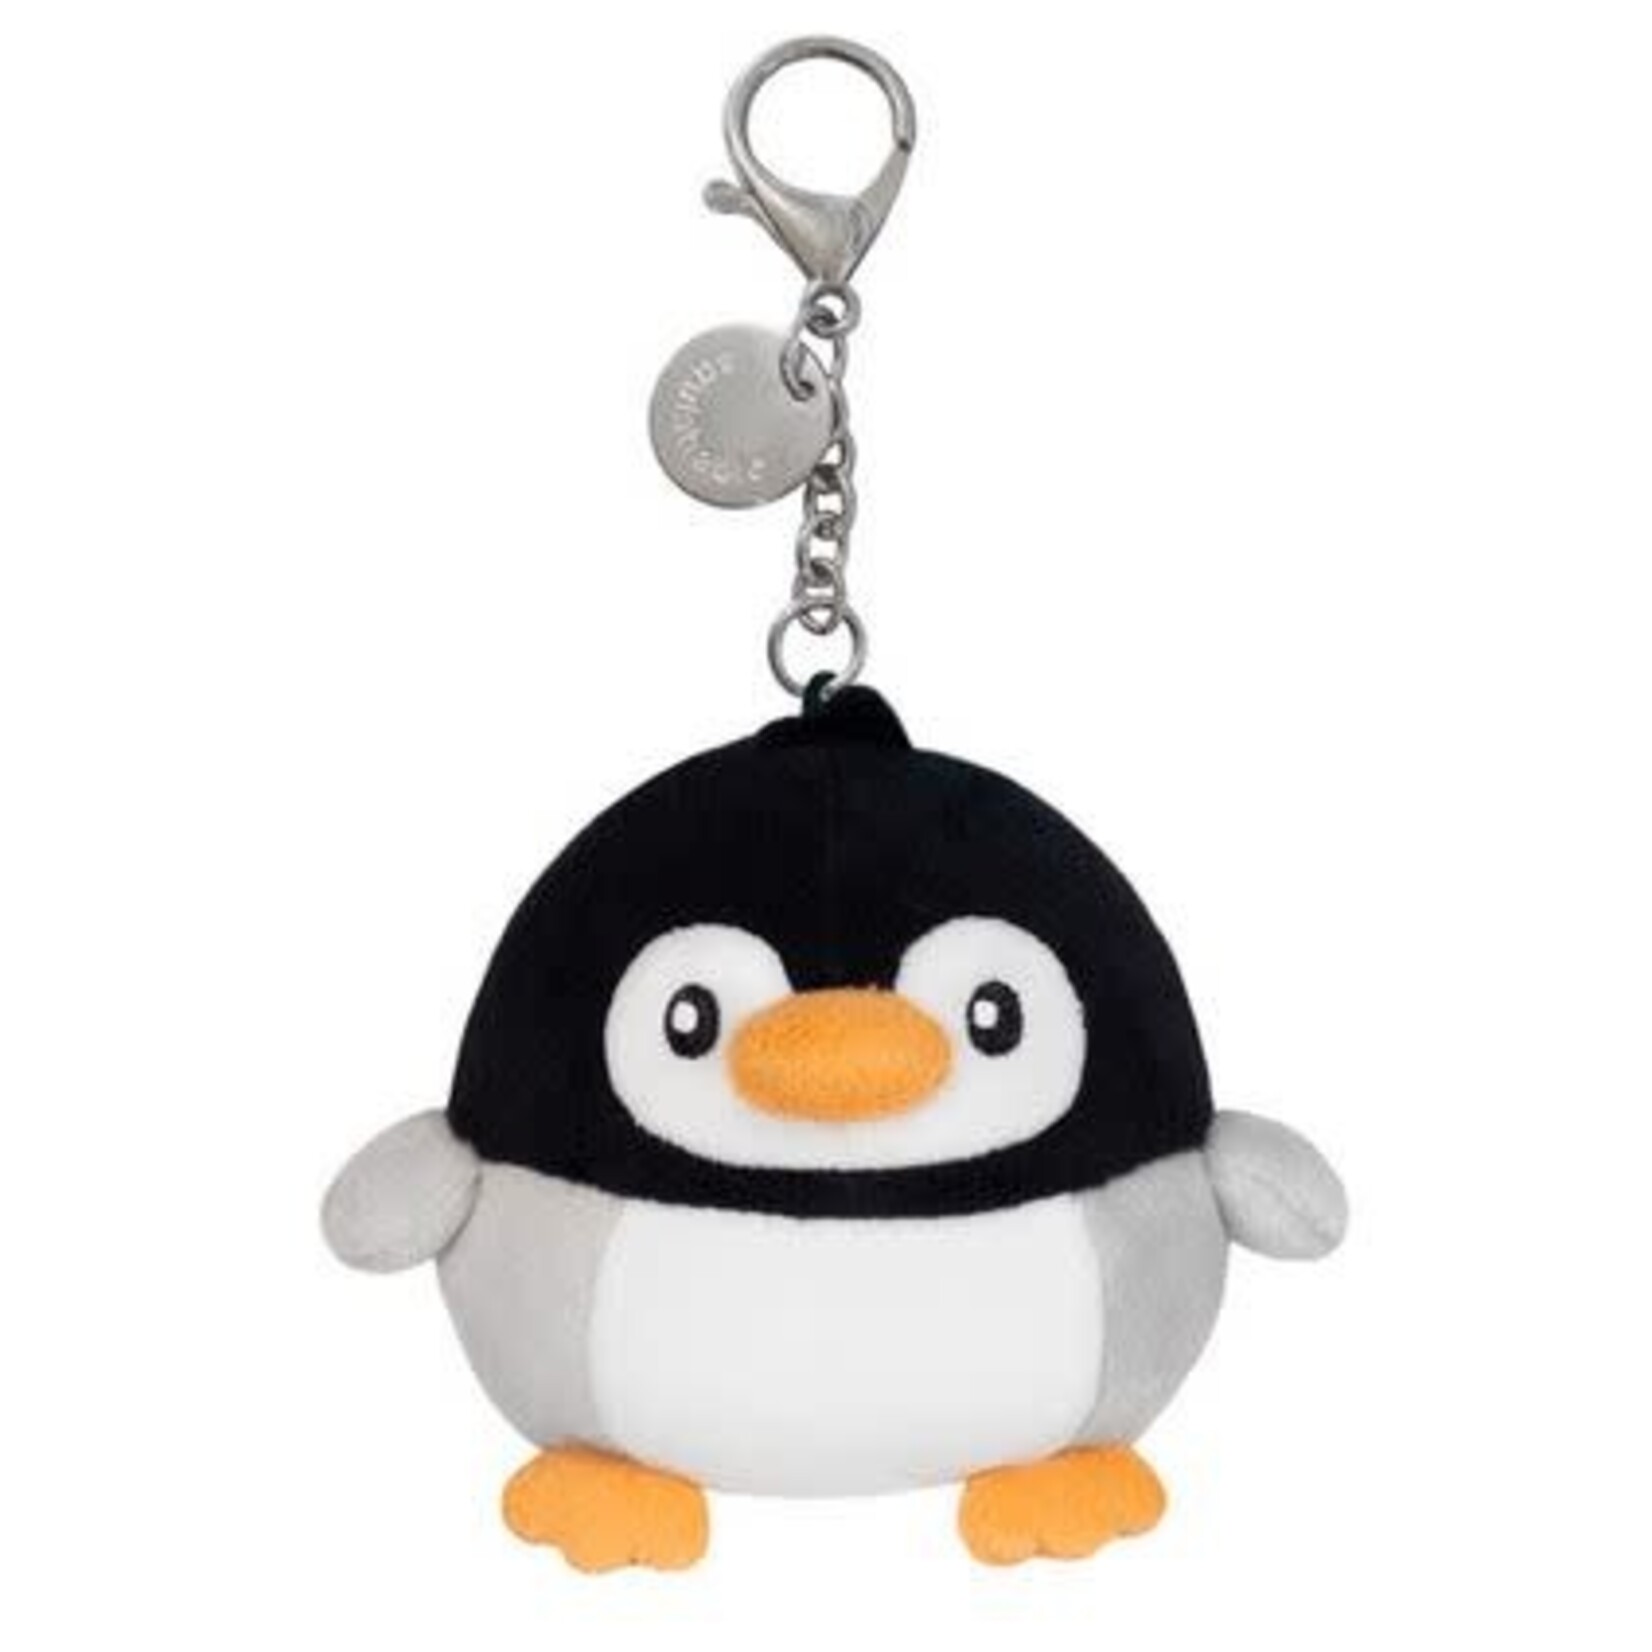 Squishable Micro Baby Penguin